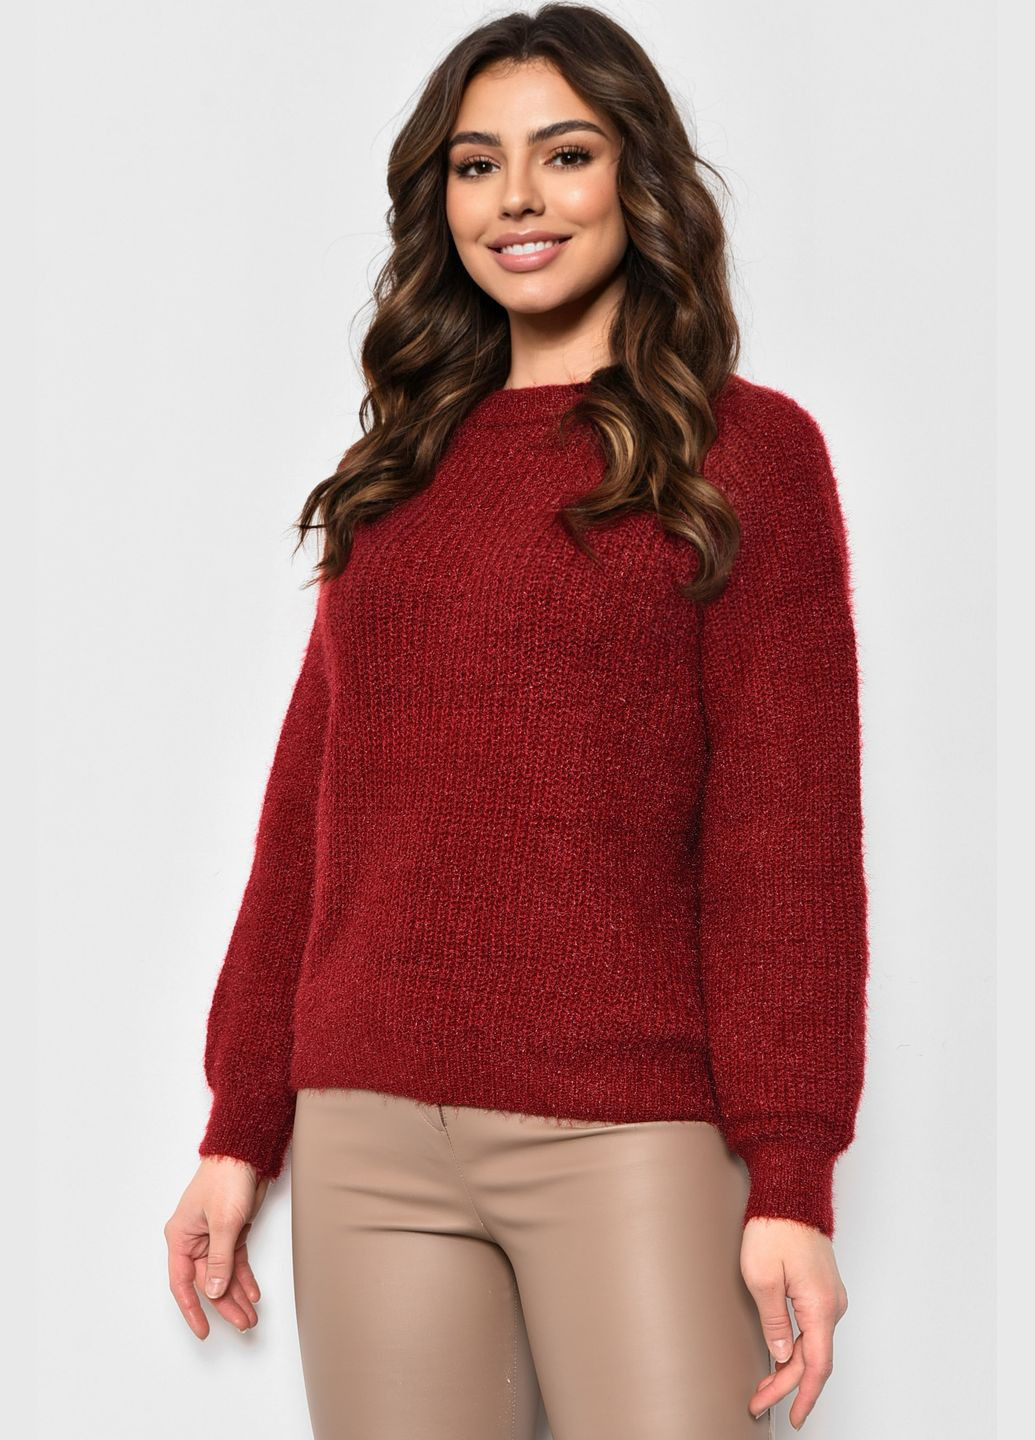 Бордовый зимний свитер женский бордового цвета пуловер Let's Shop